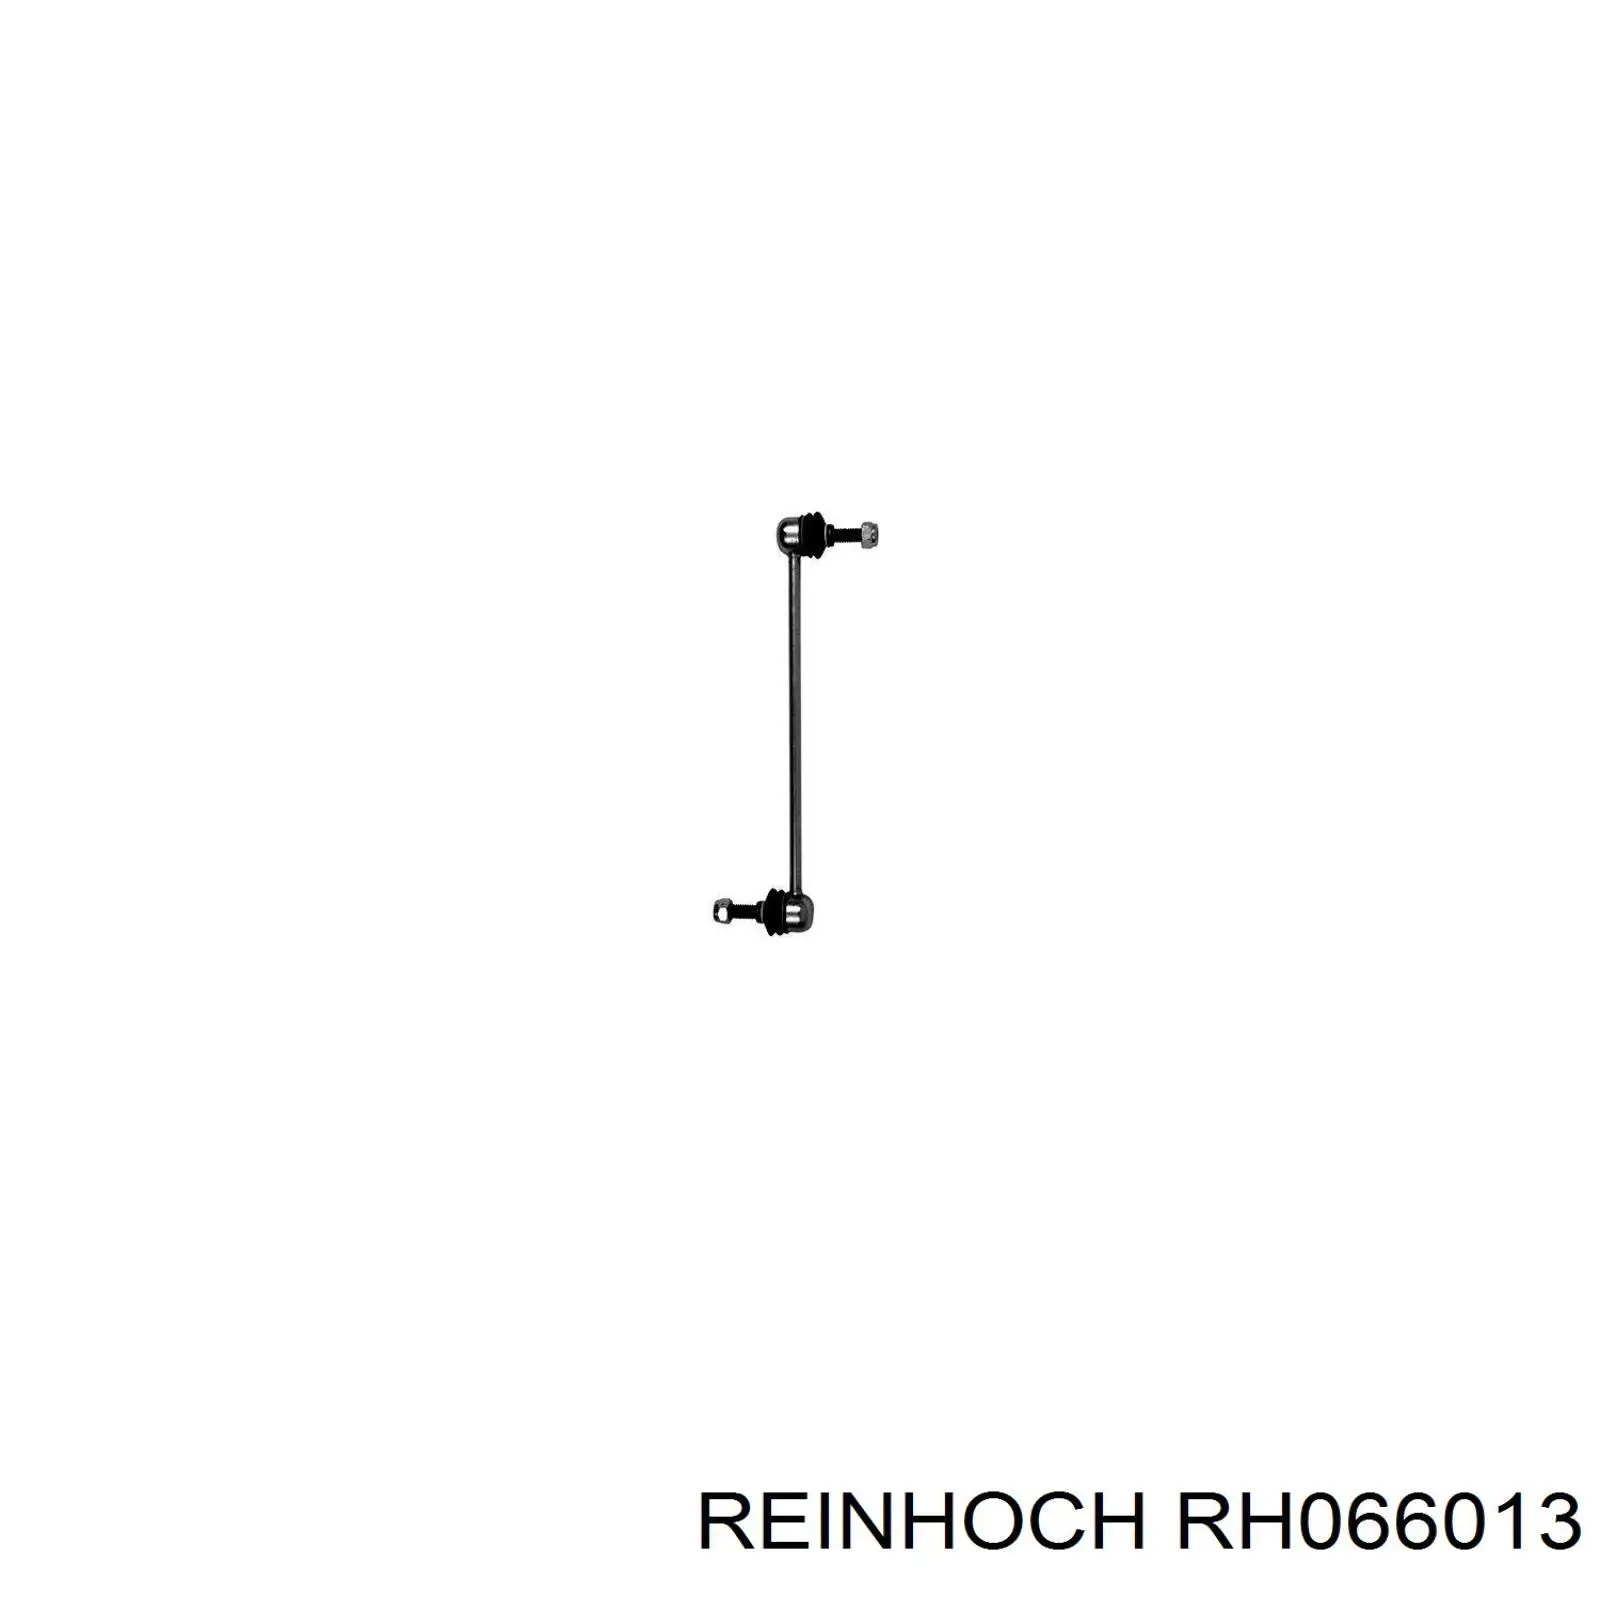 RH066013 Reinhoch soporte de barra estabilizadora delantera